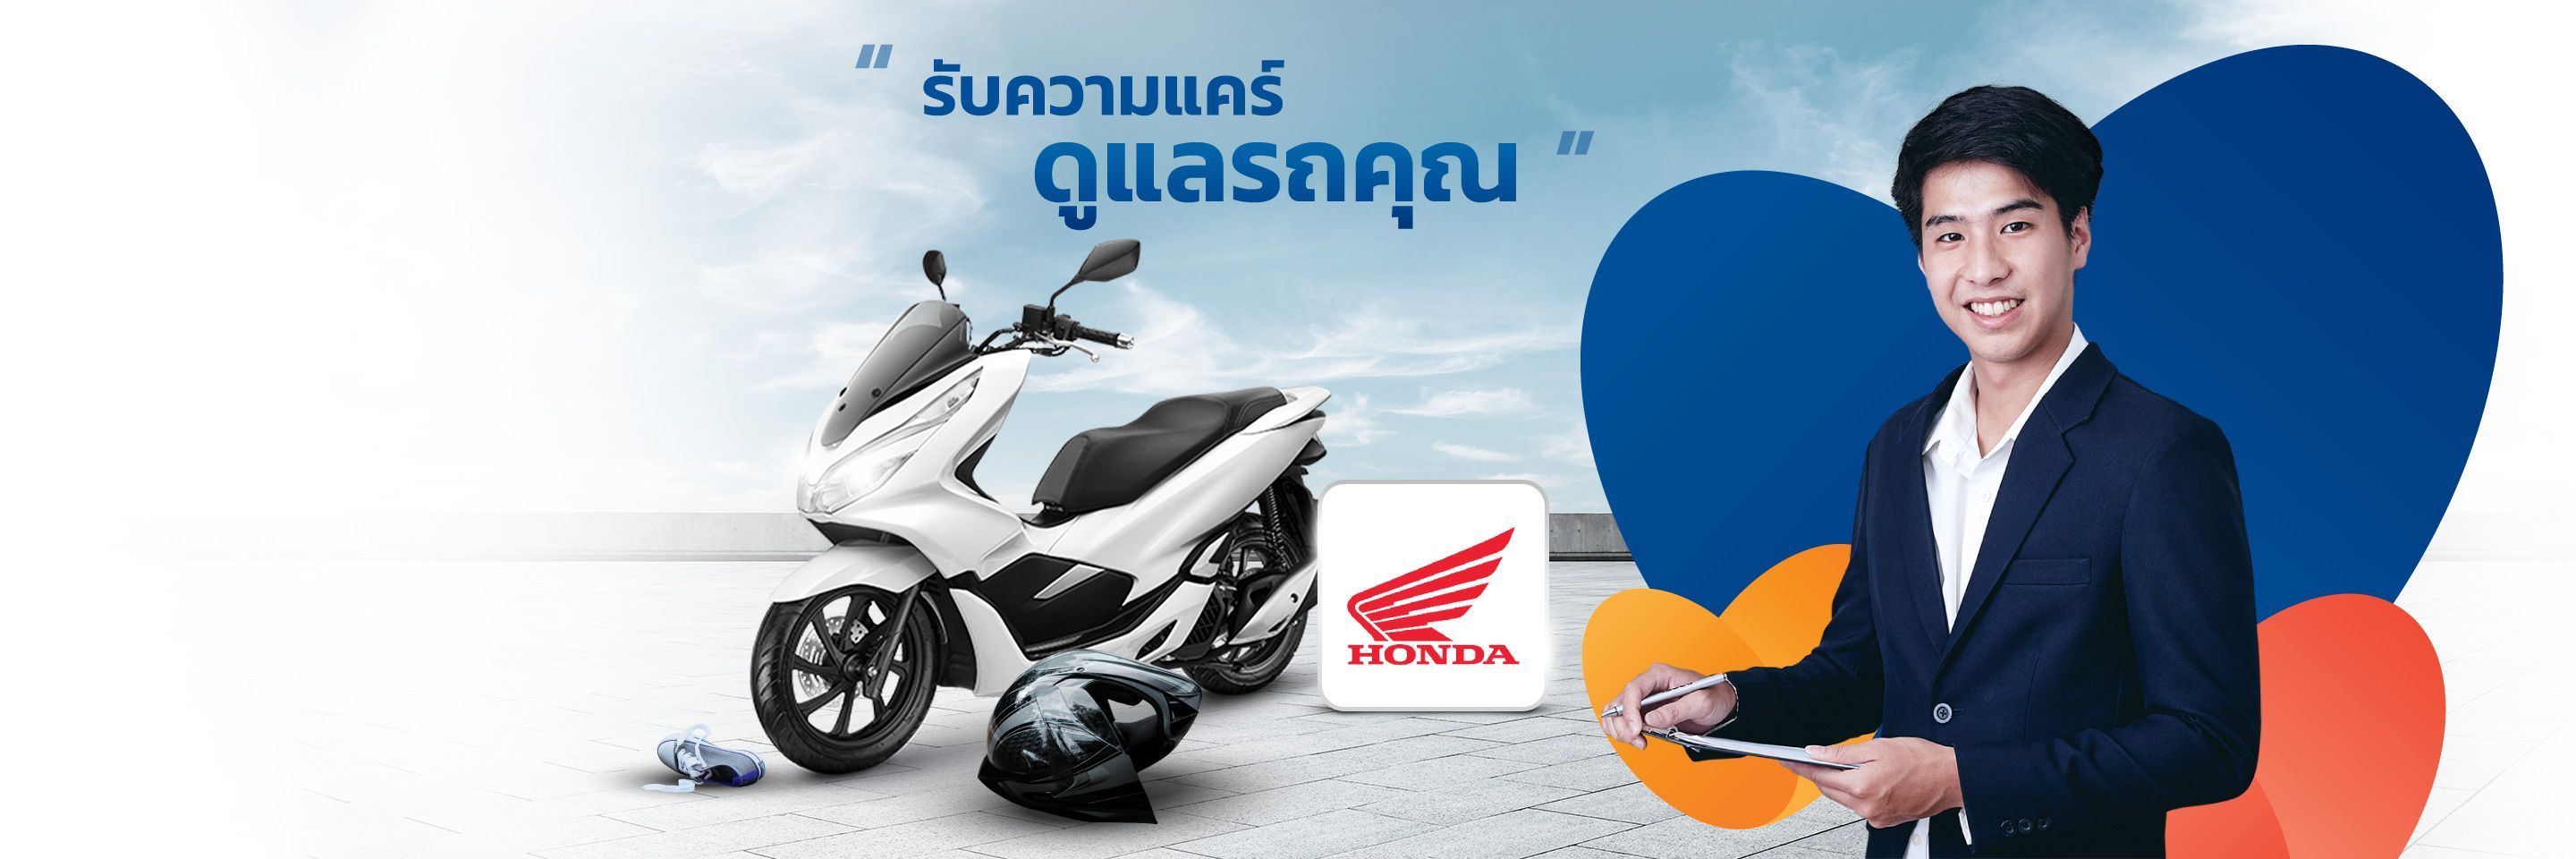 Motorbike Brand_Slider_Top banner Honda.jpg